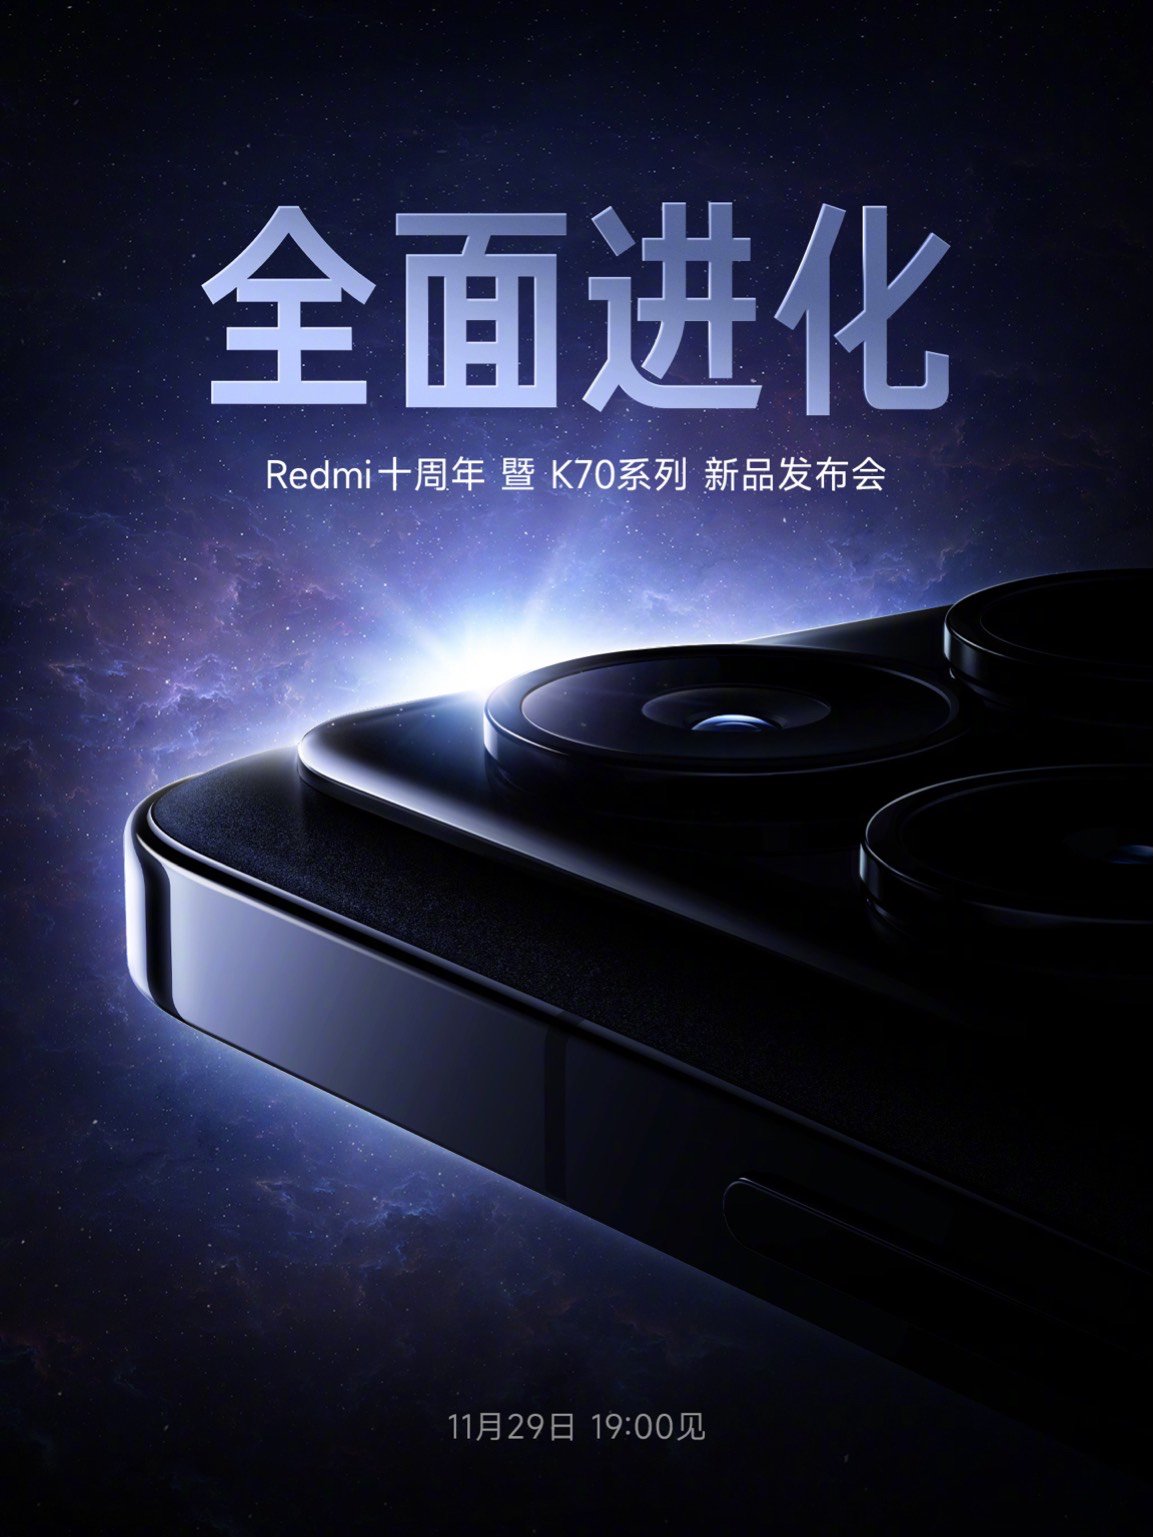 小米官宣redmi十周年暨k70系列手机新品发布会定档11月29日